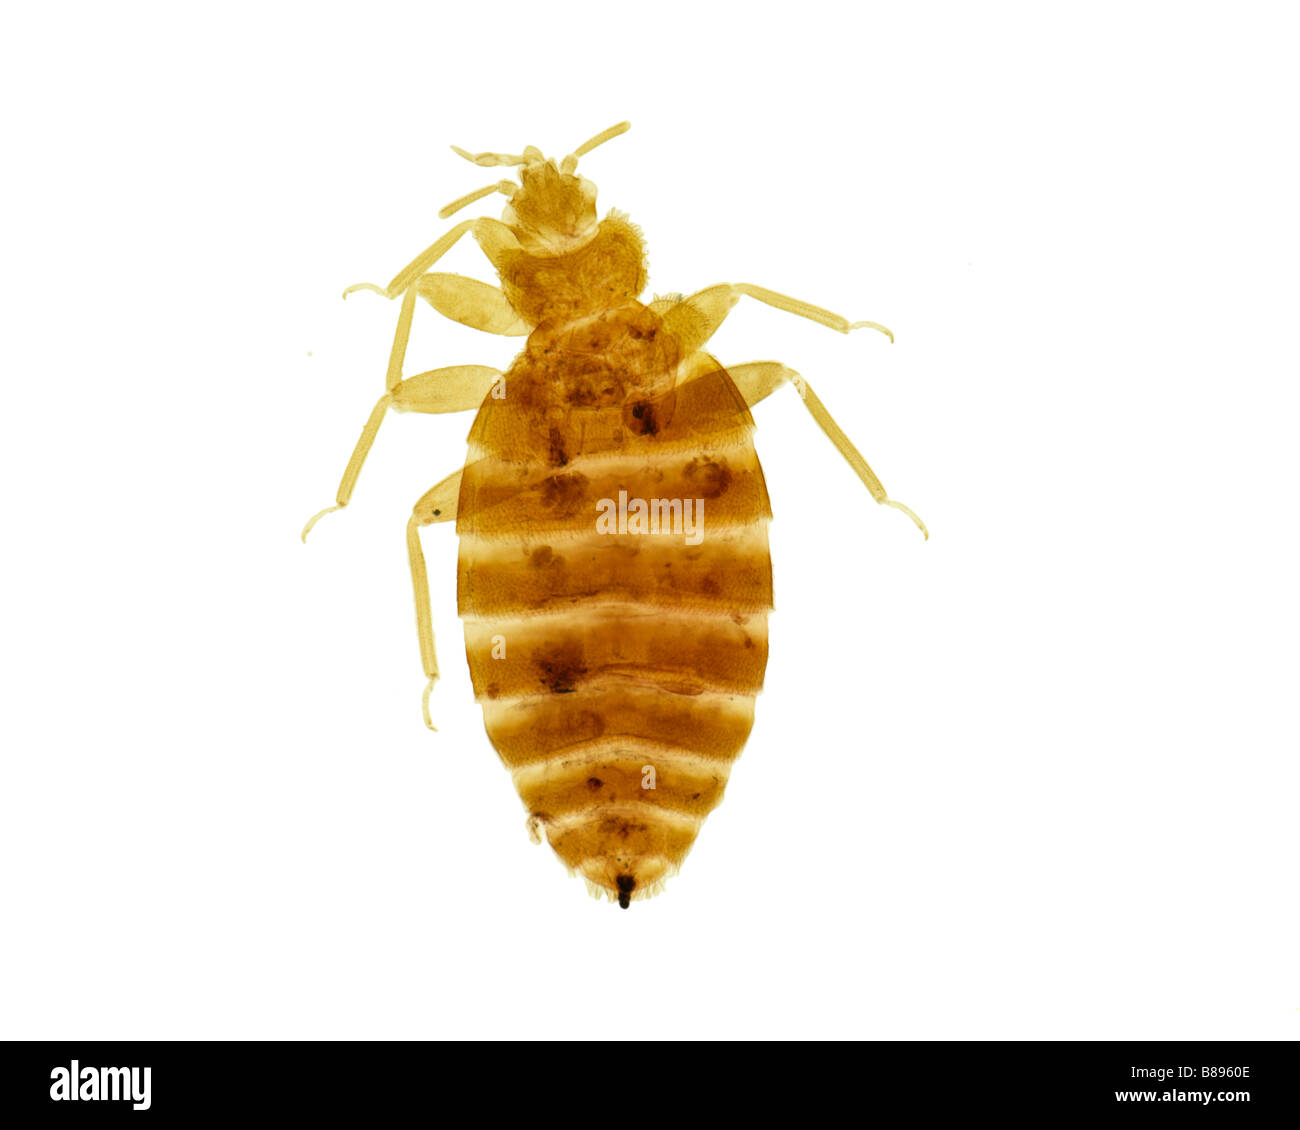 Bed-bug (Cimex lectularius) on white background. Stock Photo